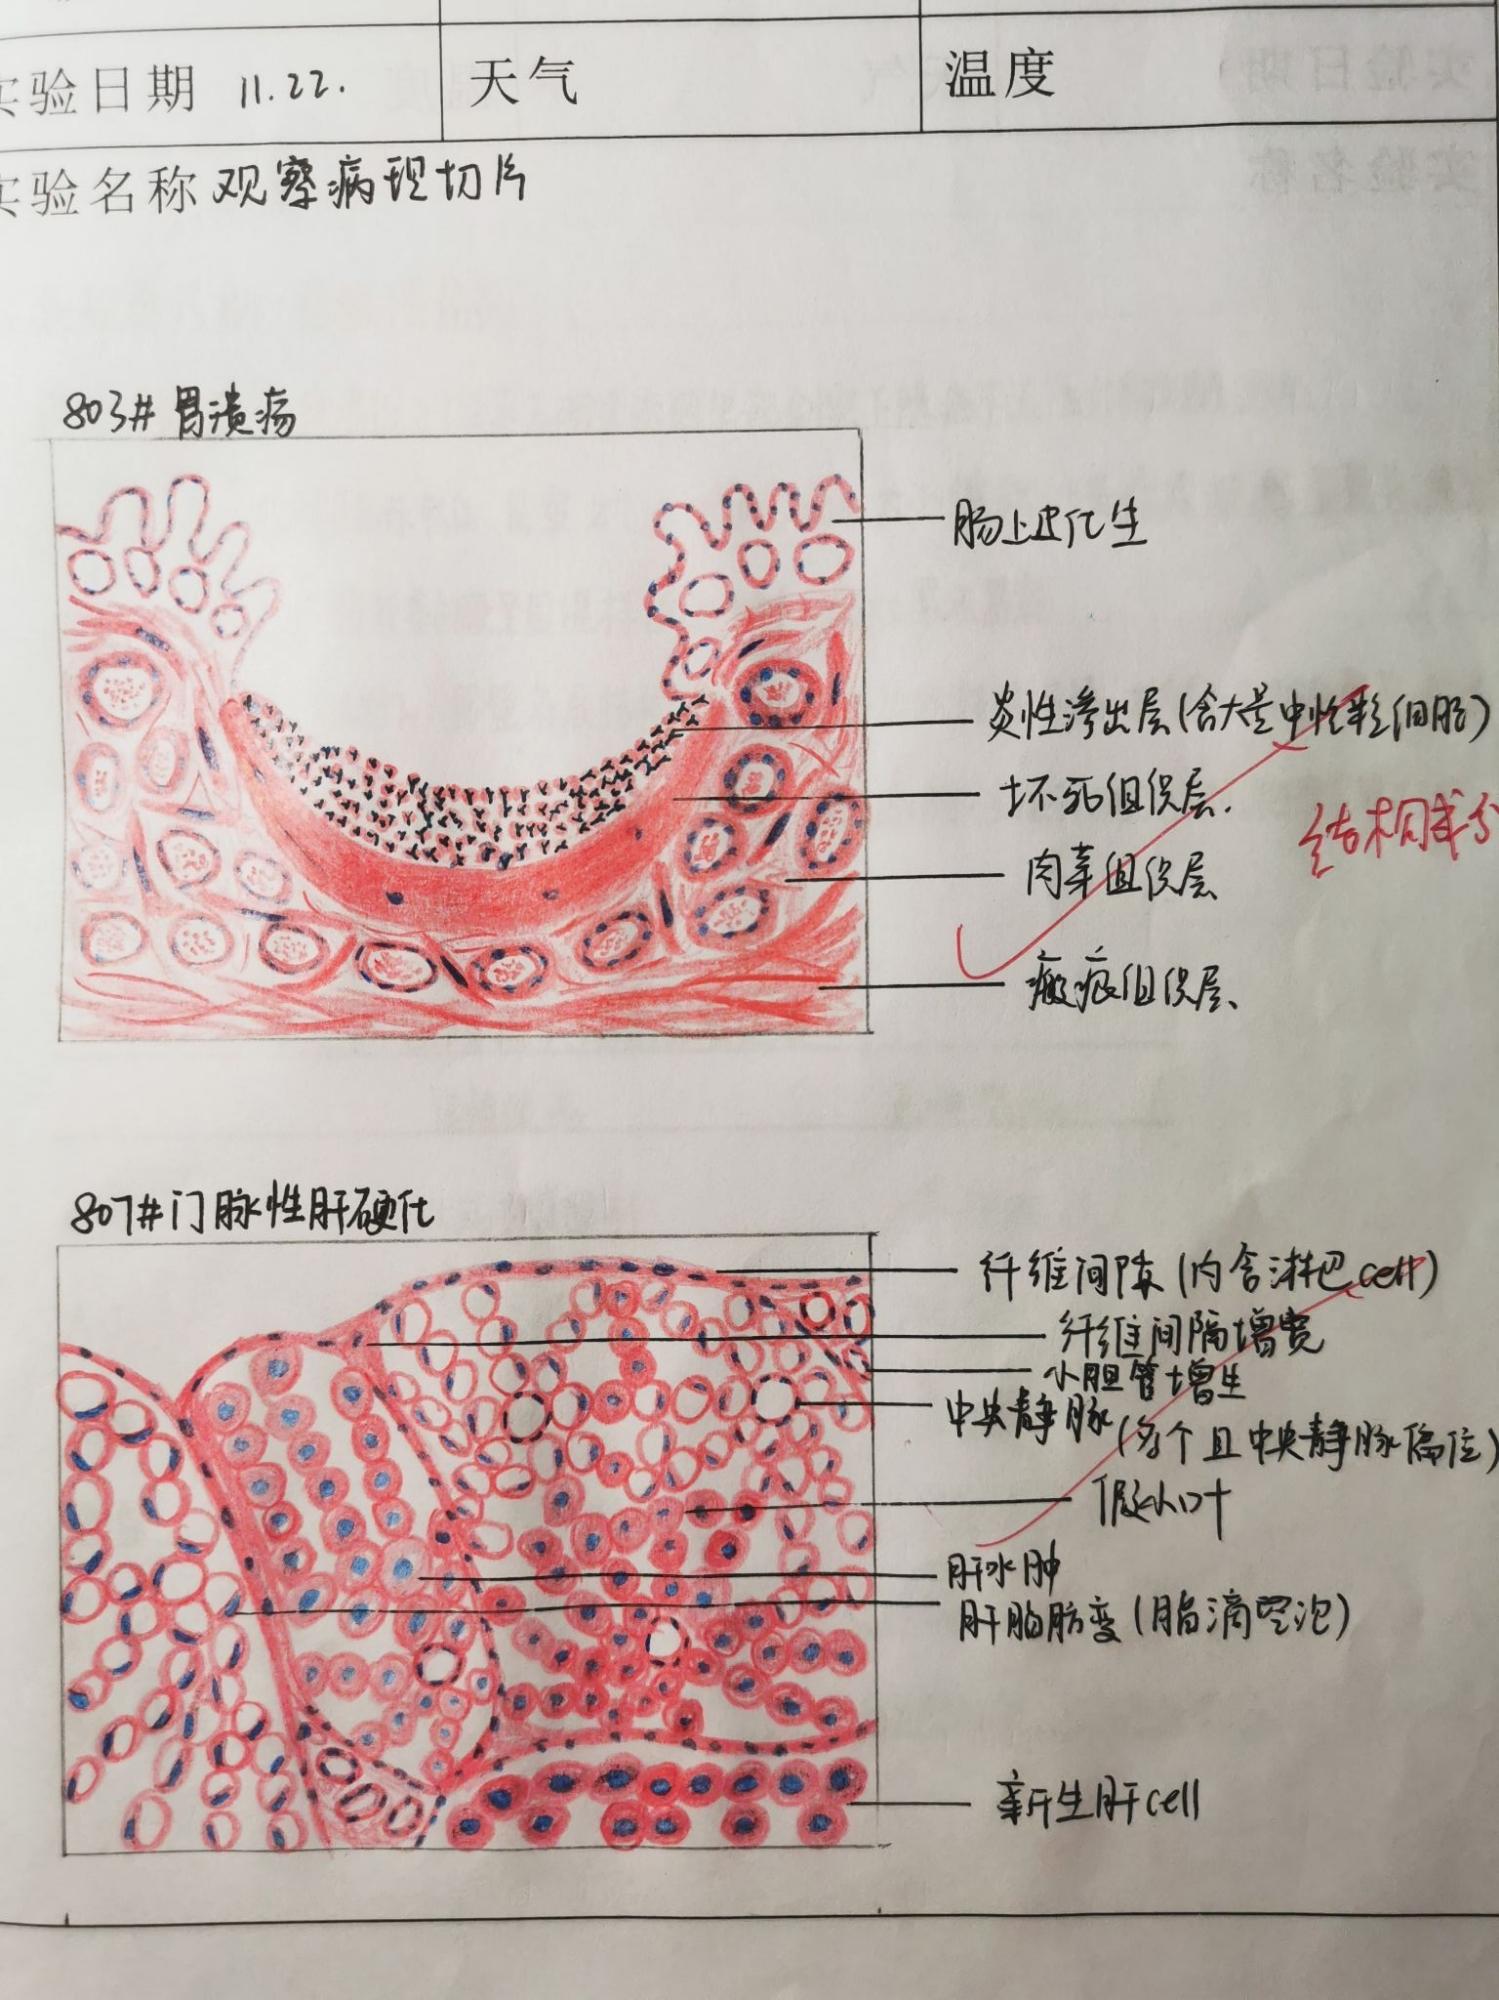 胃切片红蓝铅笔手绘图图片